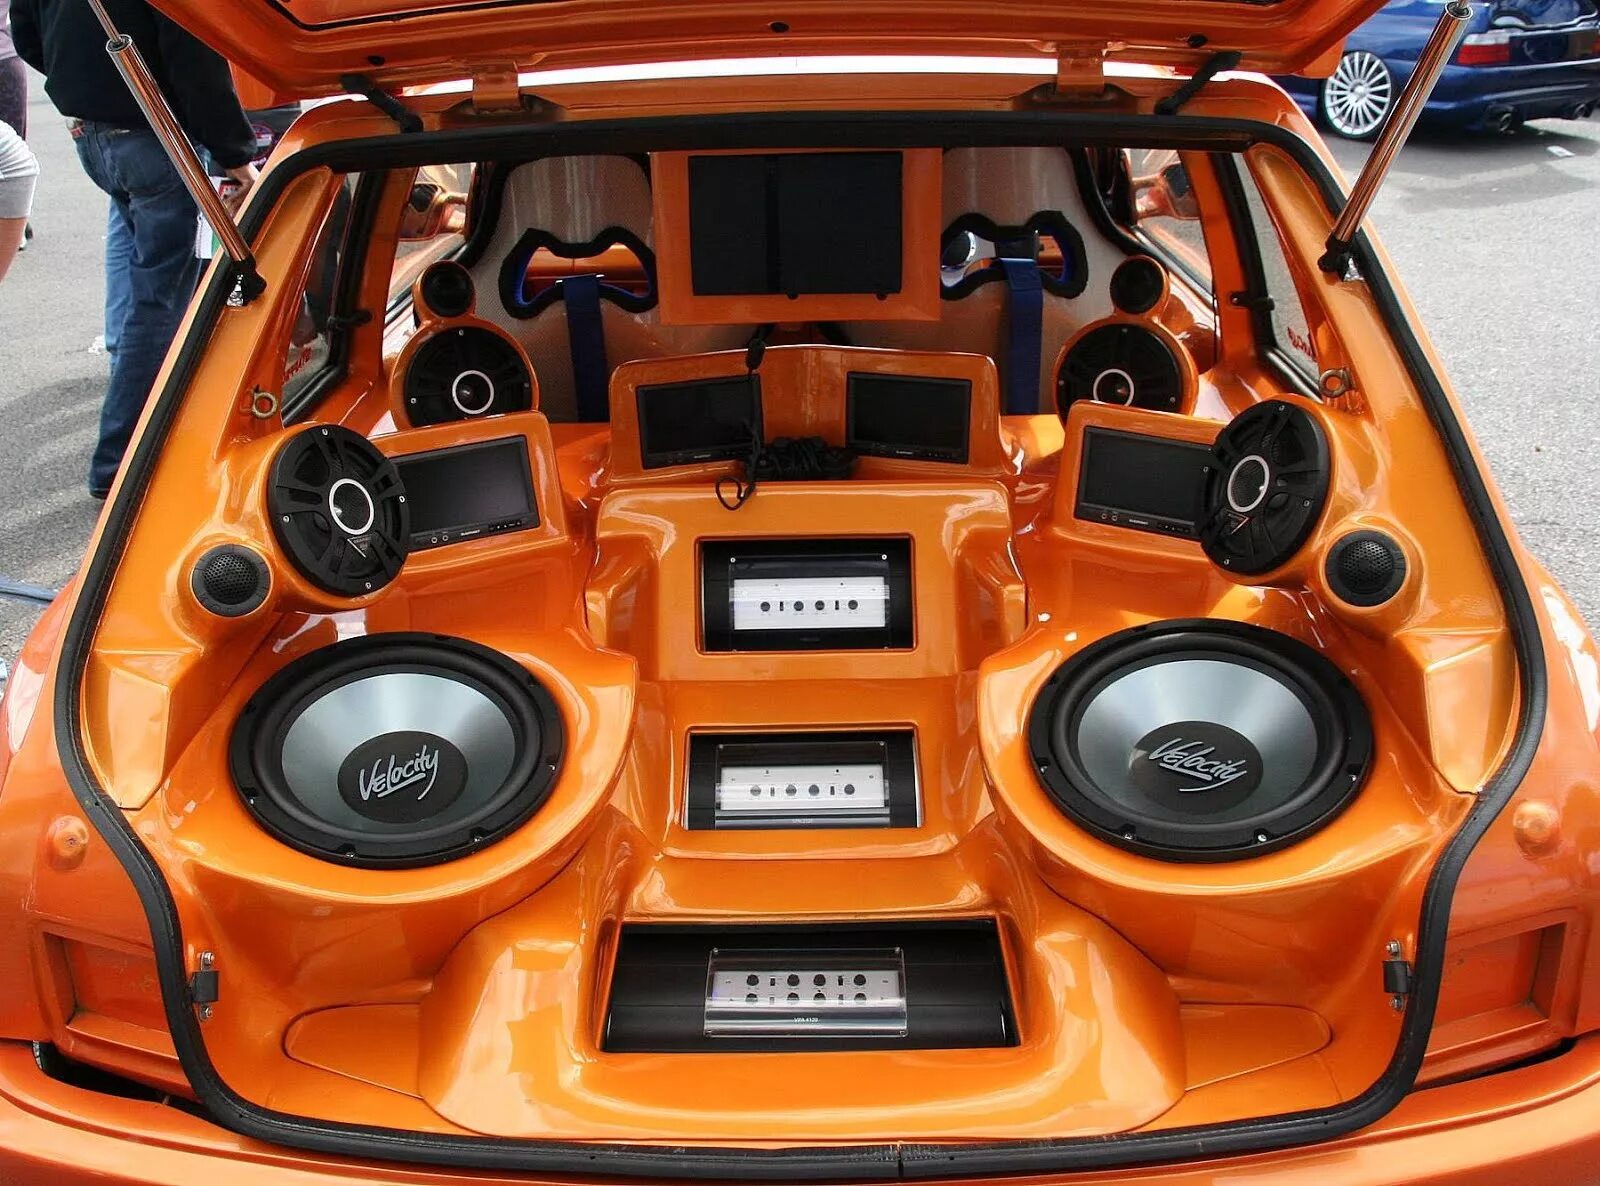 Bass top. Car Audio автомобильные динамики. Sq Audio система FG Cruiser. Трехполосная система автозвук. Сабвуфер в машину.